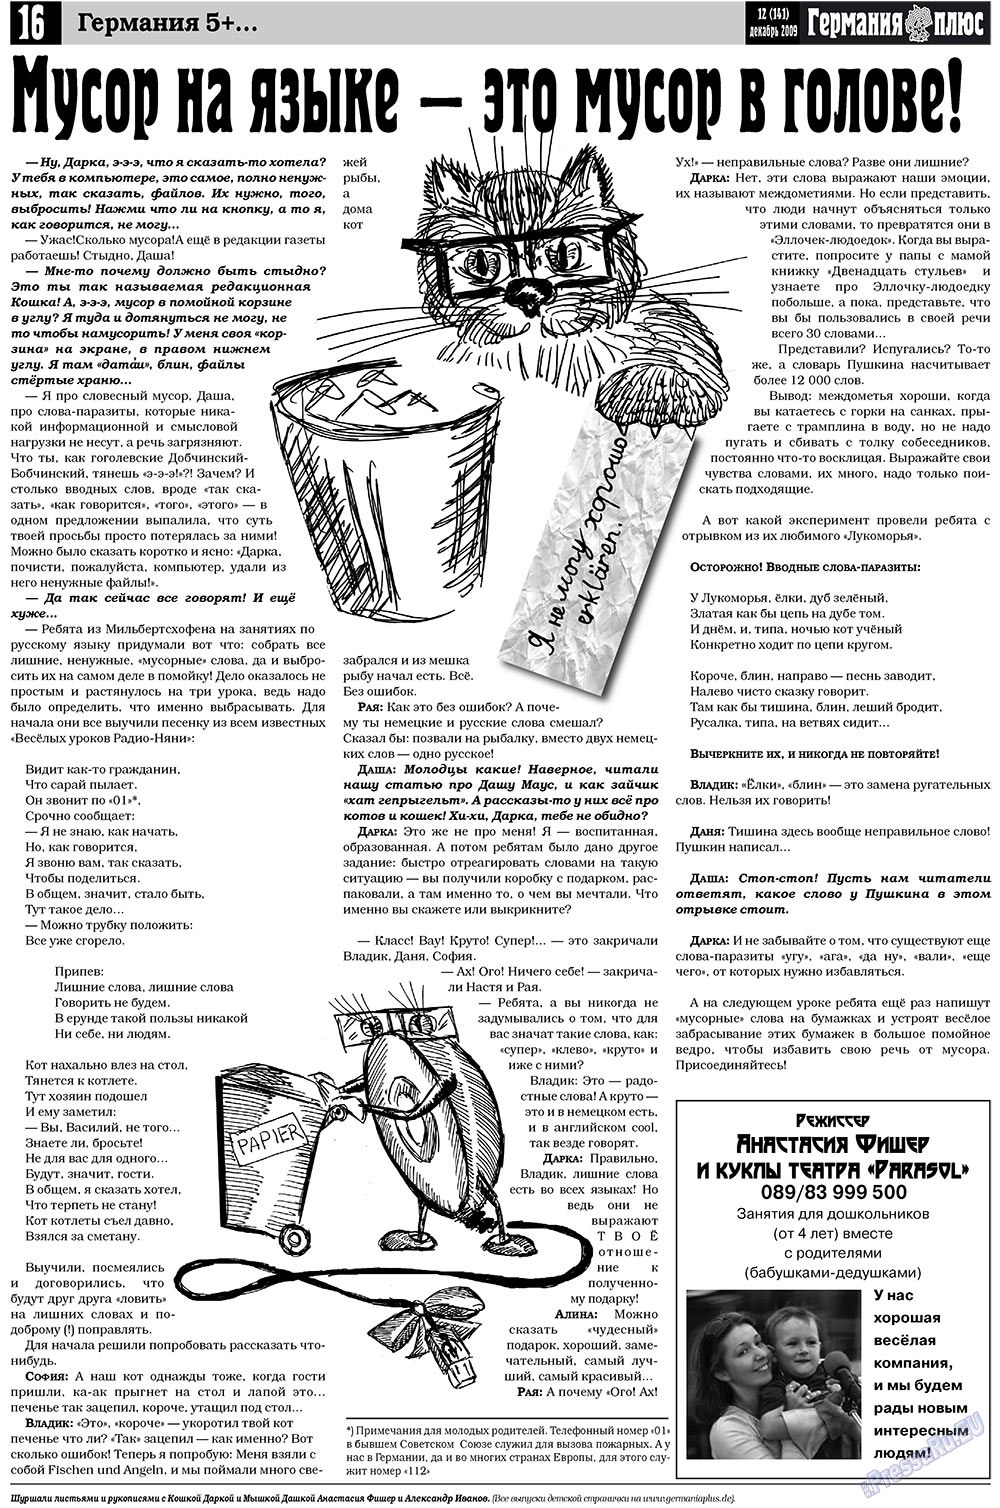 Германия плюс, газета. 2009 №12 стр.16